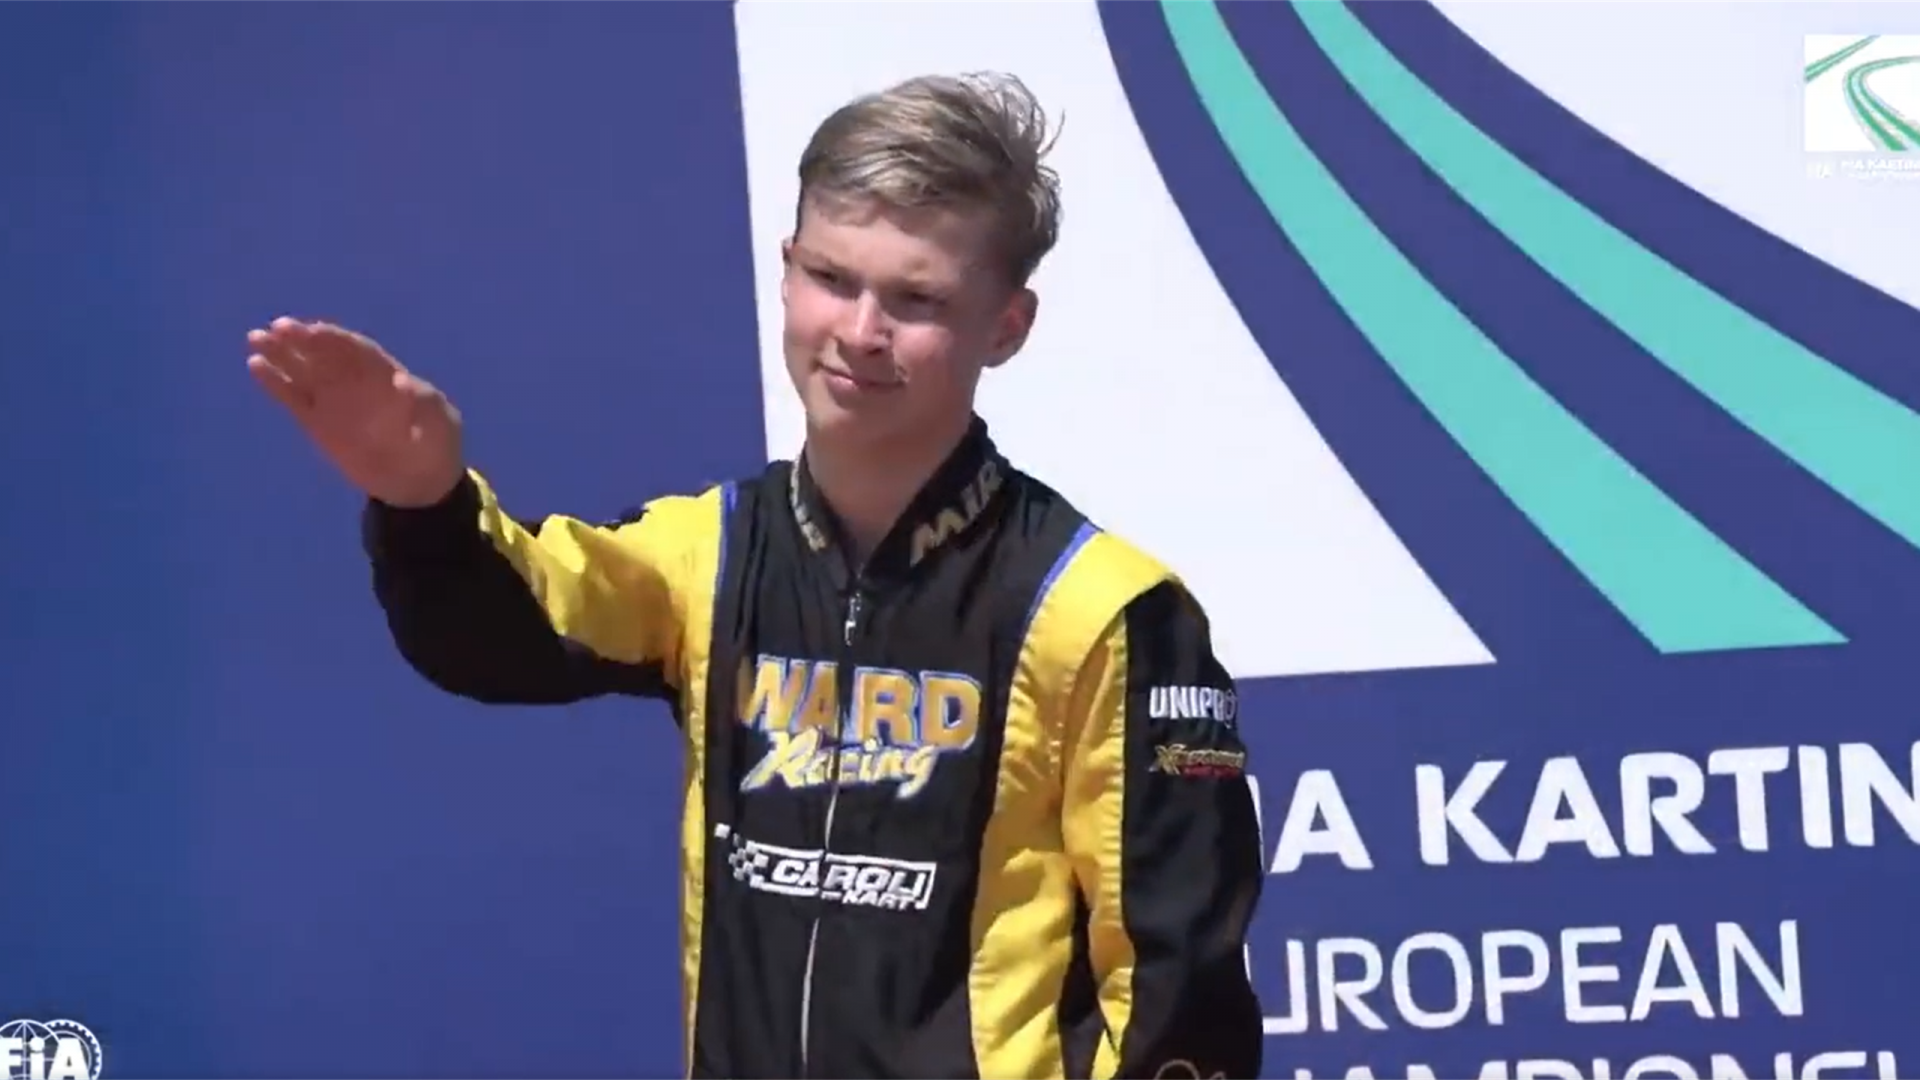 Un pilot rus a folosit salutul nazist la ceremonia de premiere de la Campionatul European de Karting